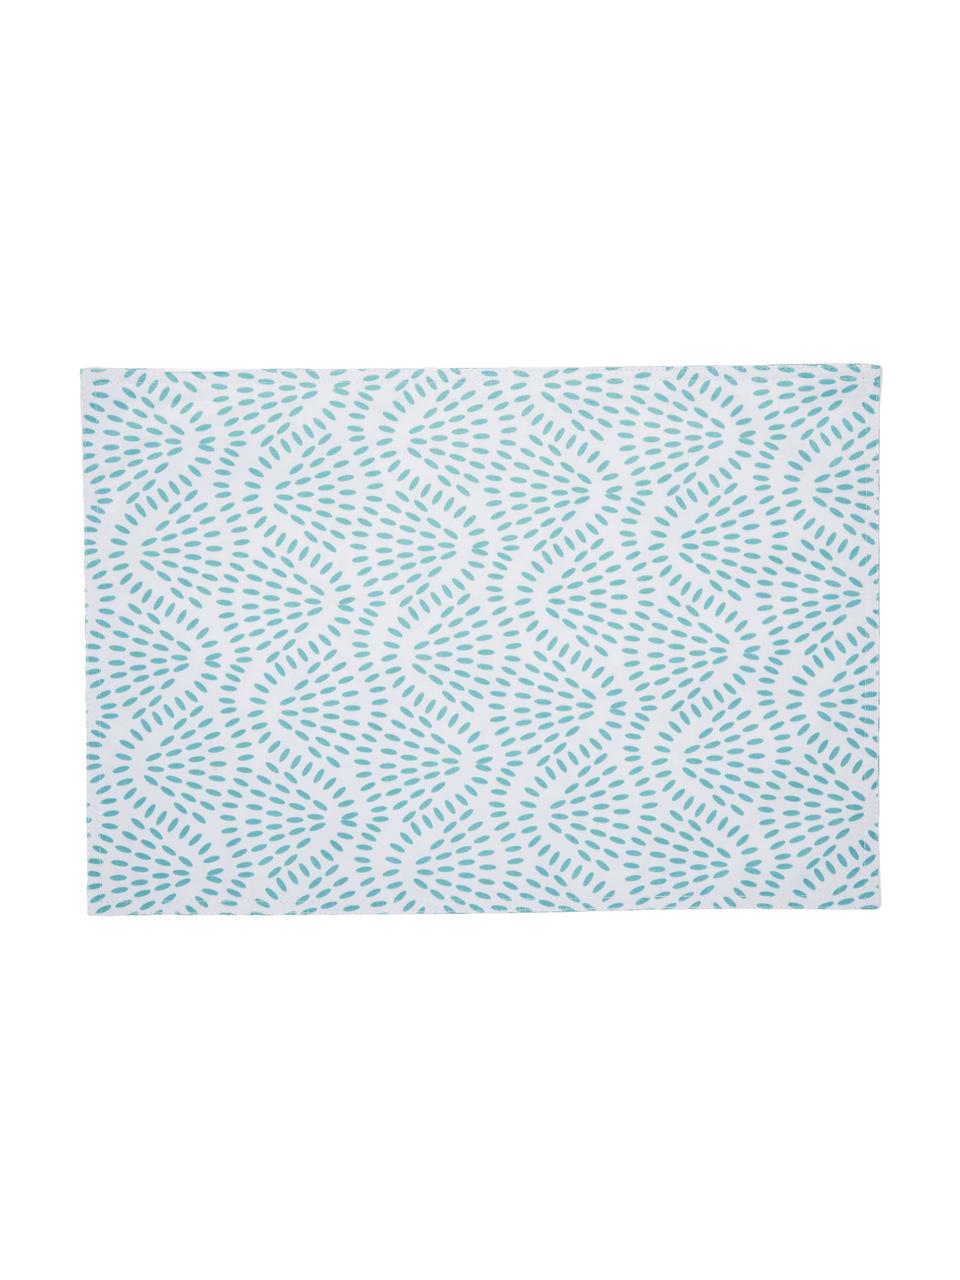 Wasserabweisende Kunststoff-Tischsets Starbone, 2 Stück, Polyester, Weiss, Blau, 33 x 48 cm